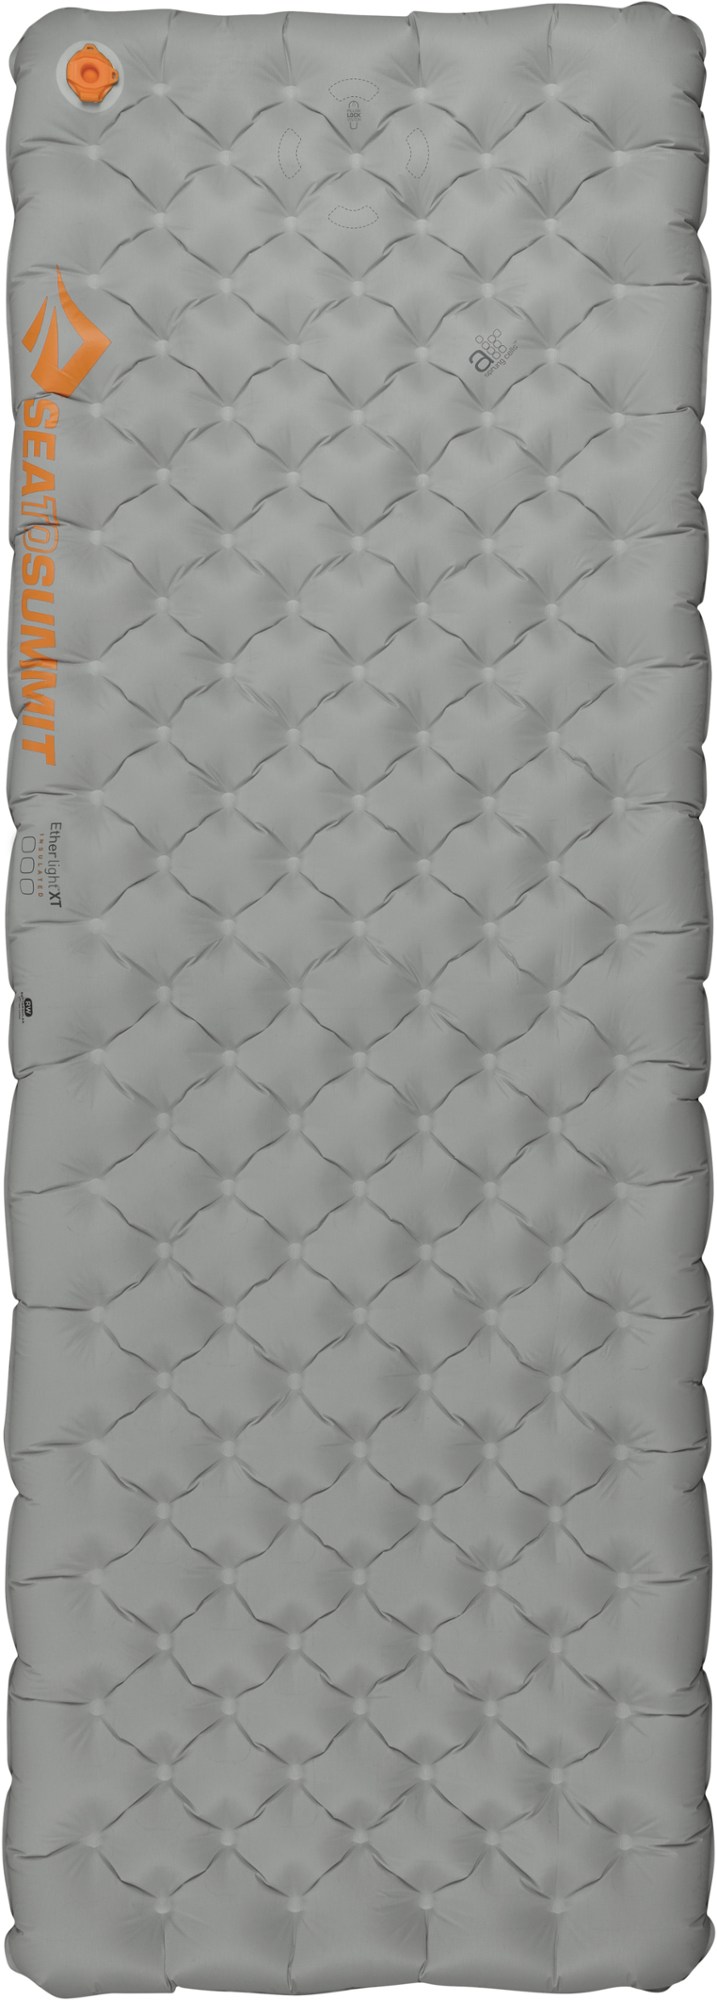 цена Ether Light XT Изолированный воздушный прямоугольный спальный коврик Sea to Summit, серый